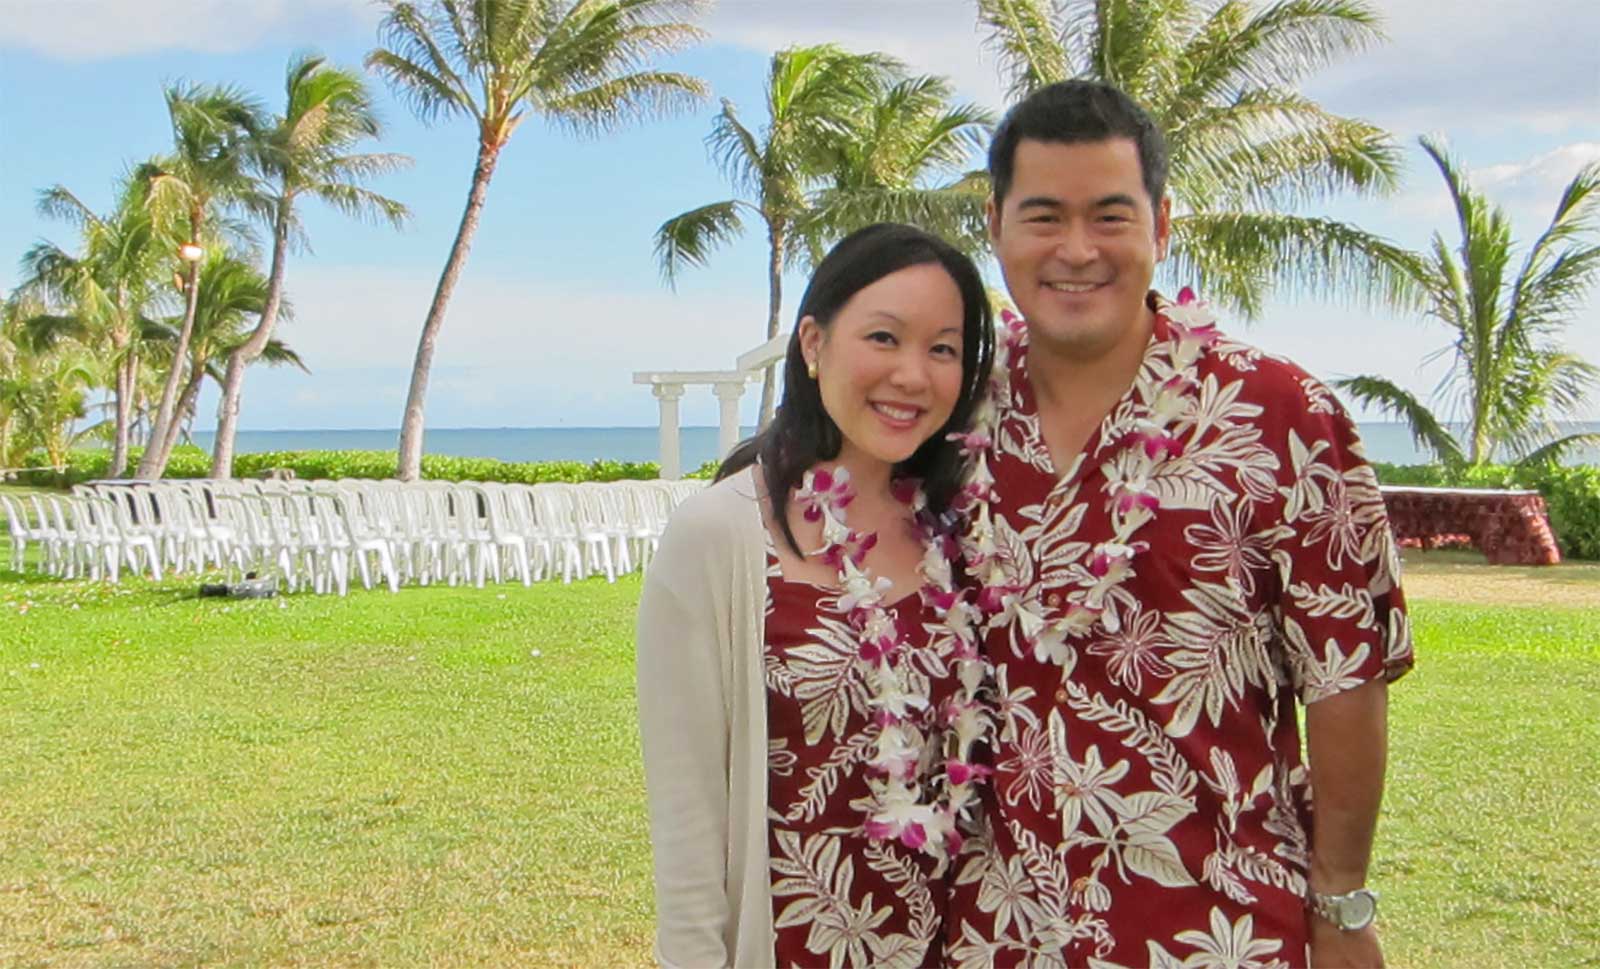 hawaiian wedding guest dresses